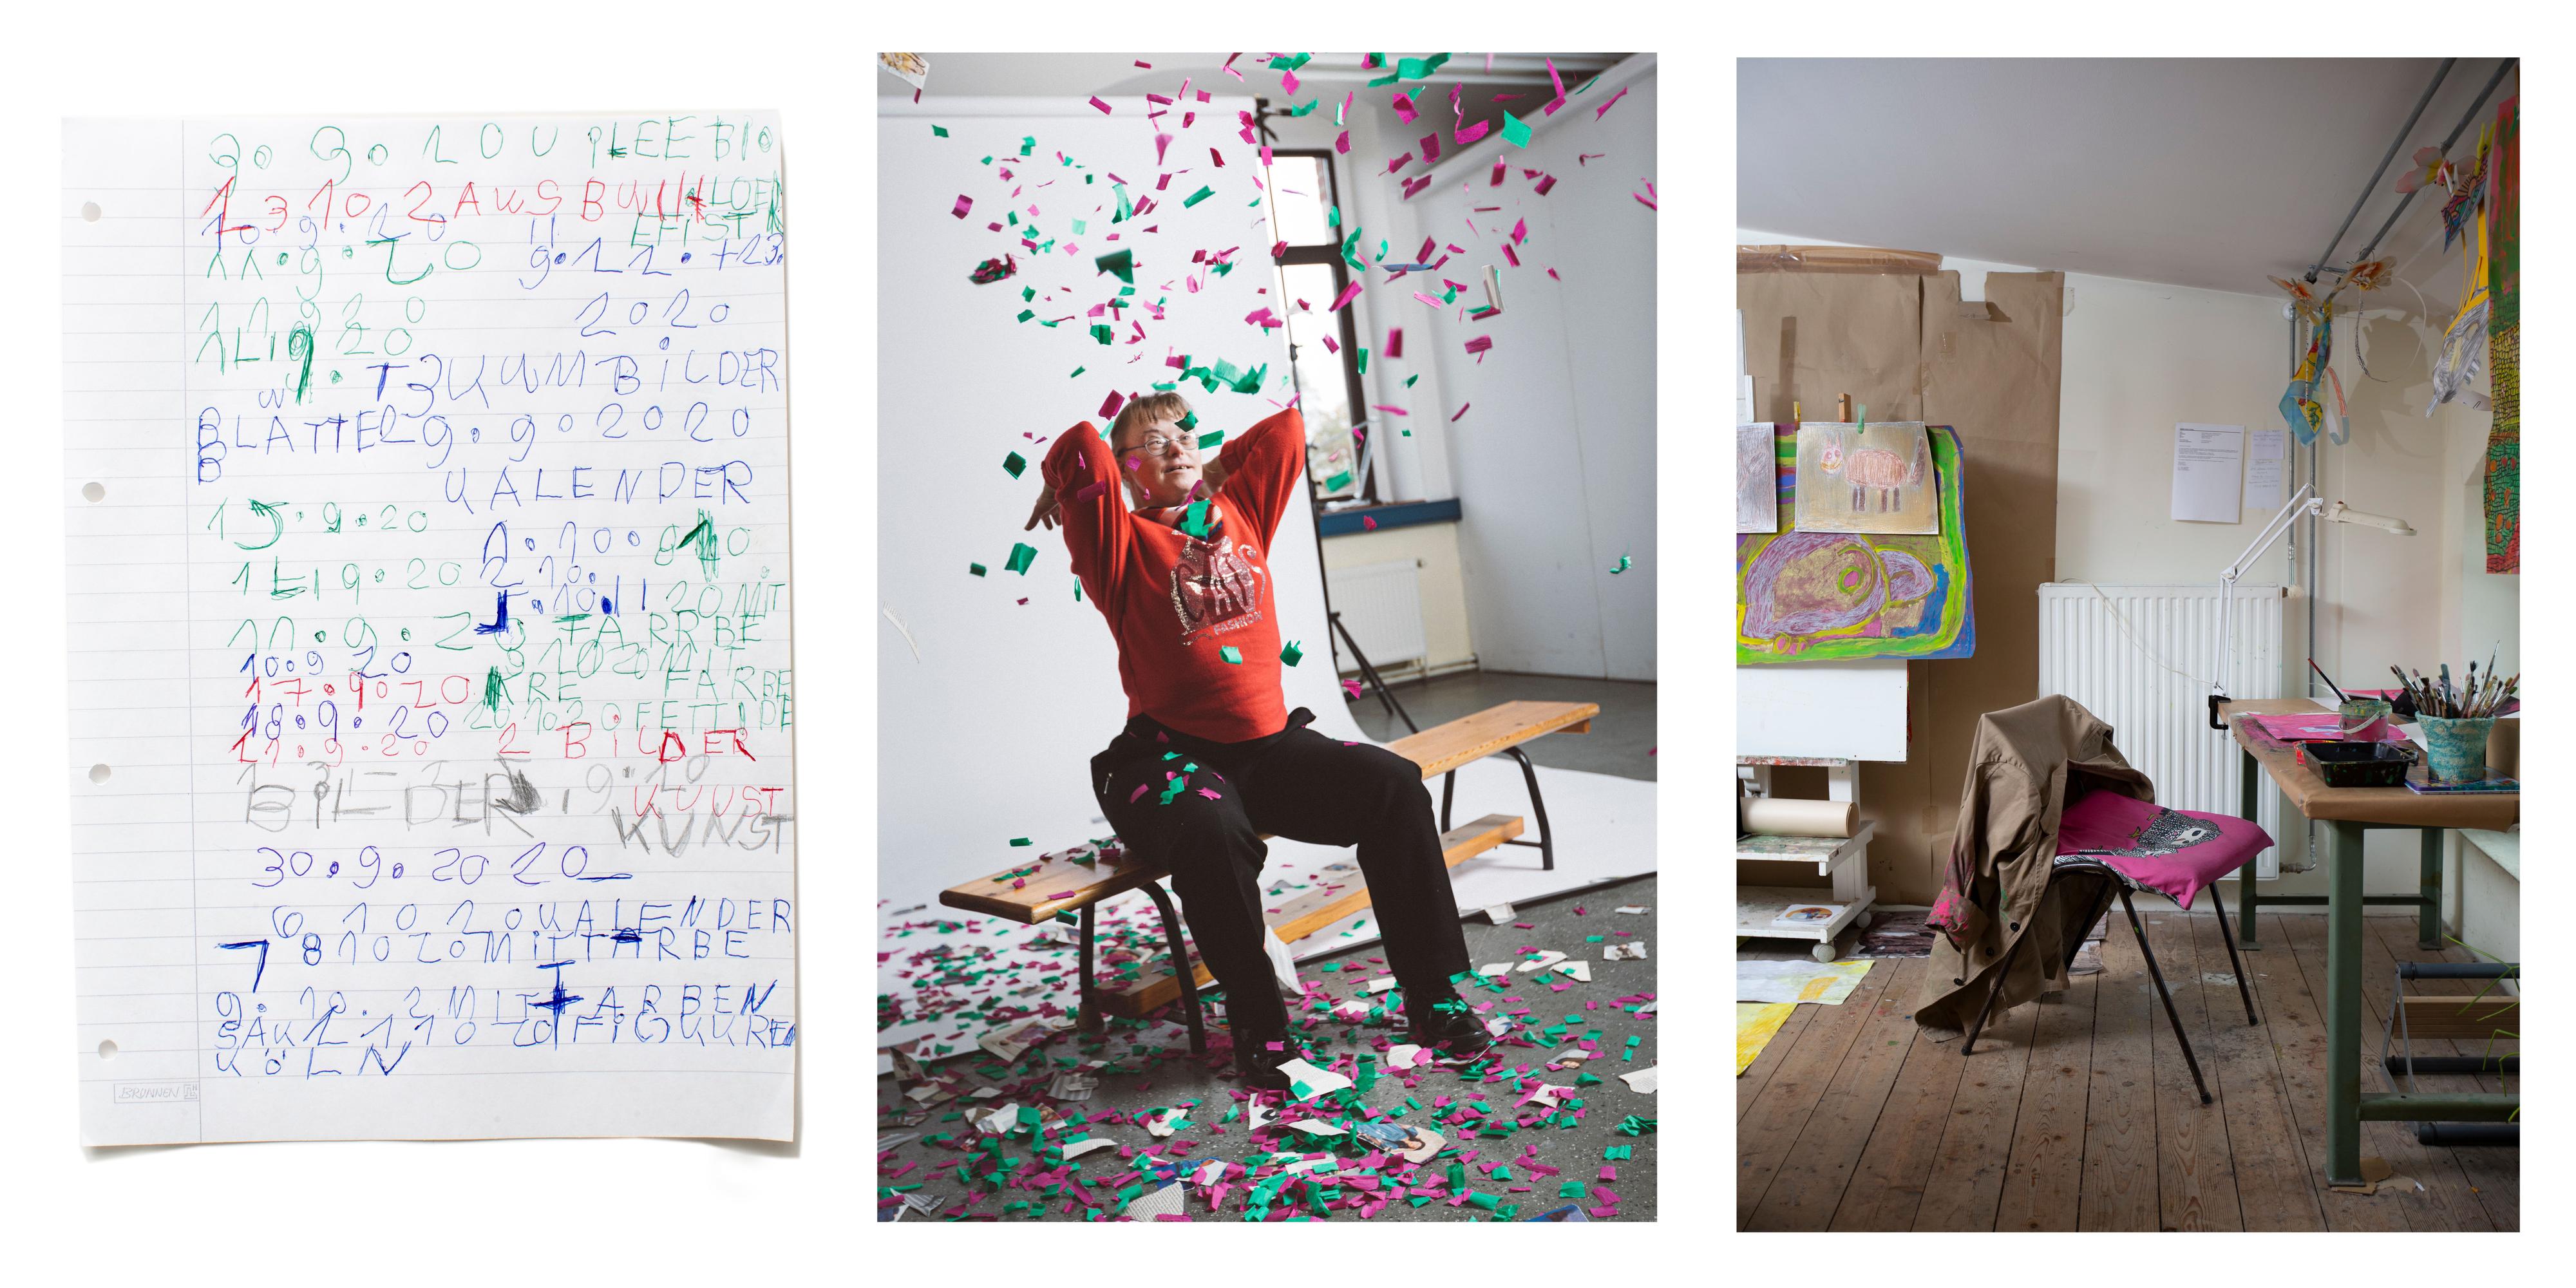 Collage aus drei Bildern: Liniertes Blatt Papier mit Zahlen und Buchstaben, eine Frau sitzt auf einer Bank und wirft bunte Papierschnipsel in die Luft; ein Atelier mit Malutensilien.